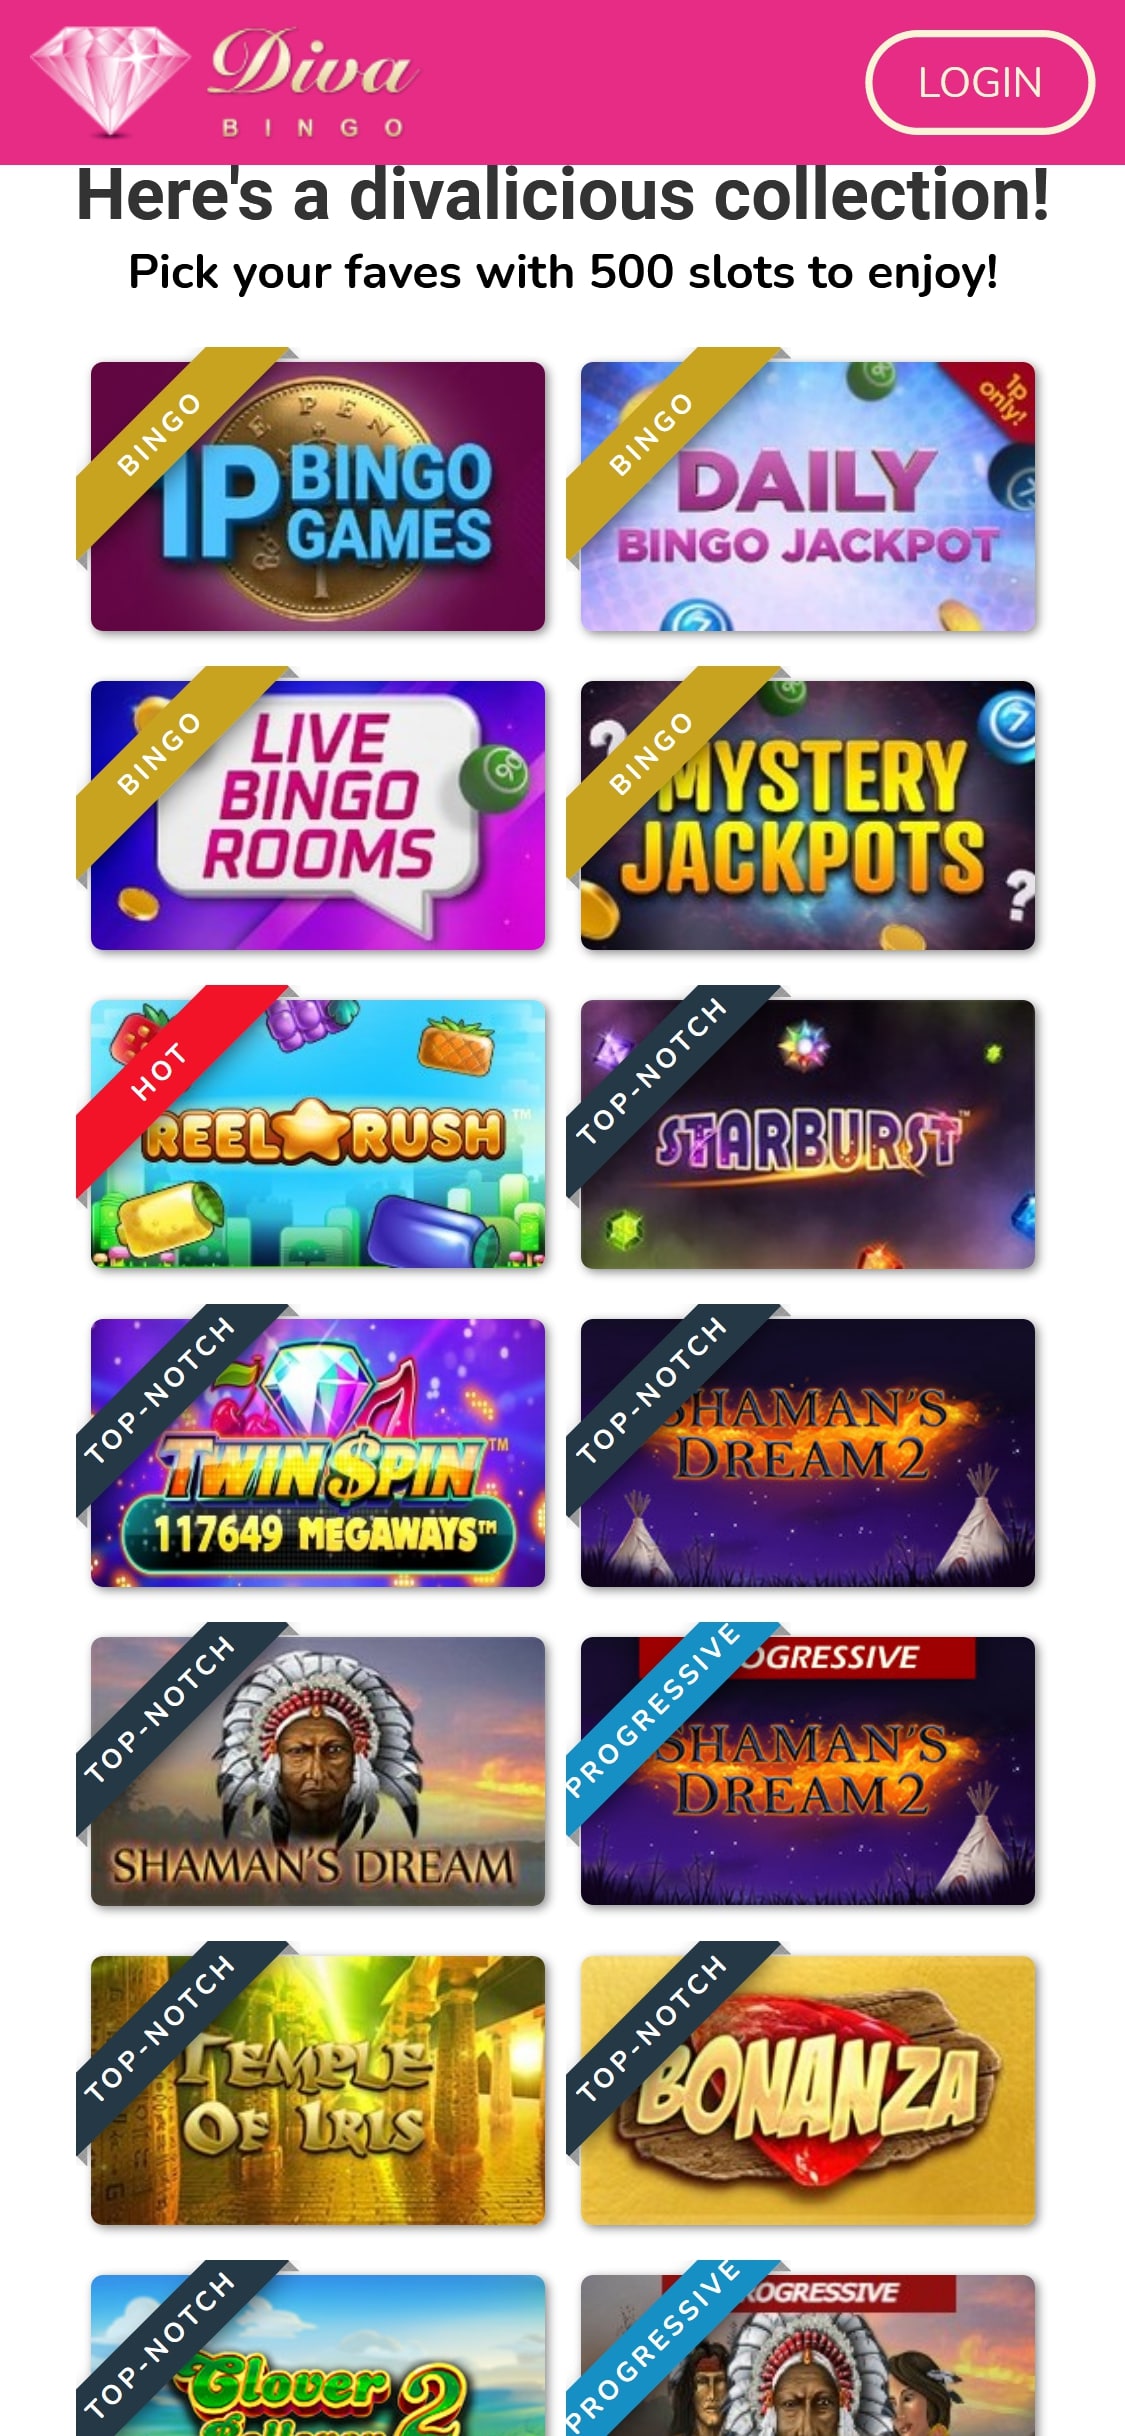 Diva Bingo Casino Mobile Games Review